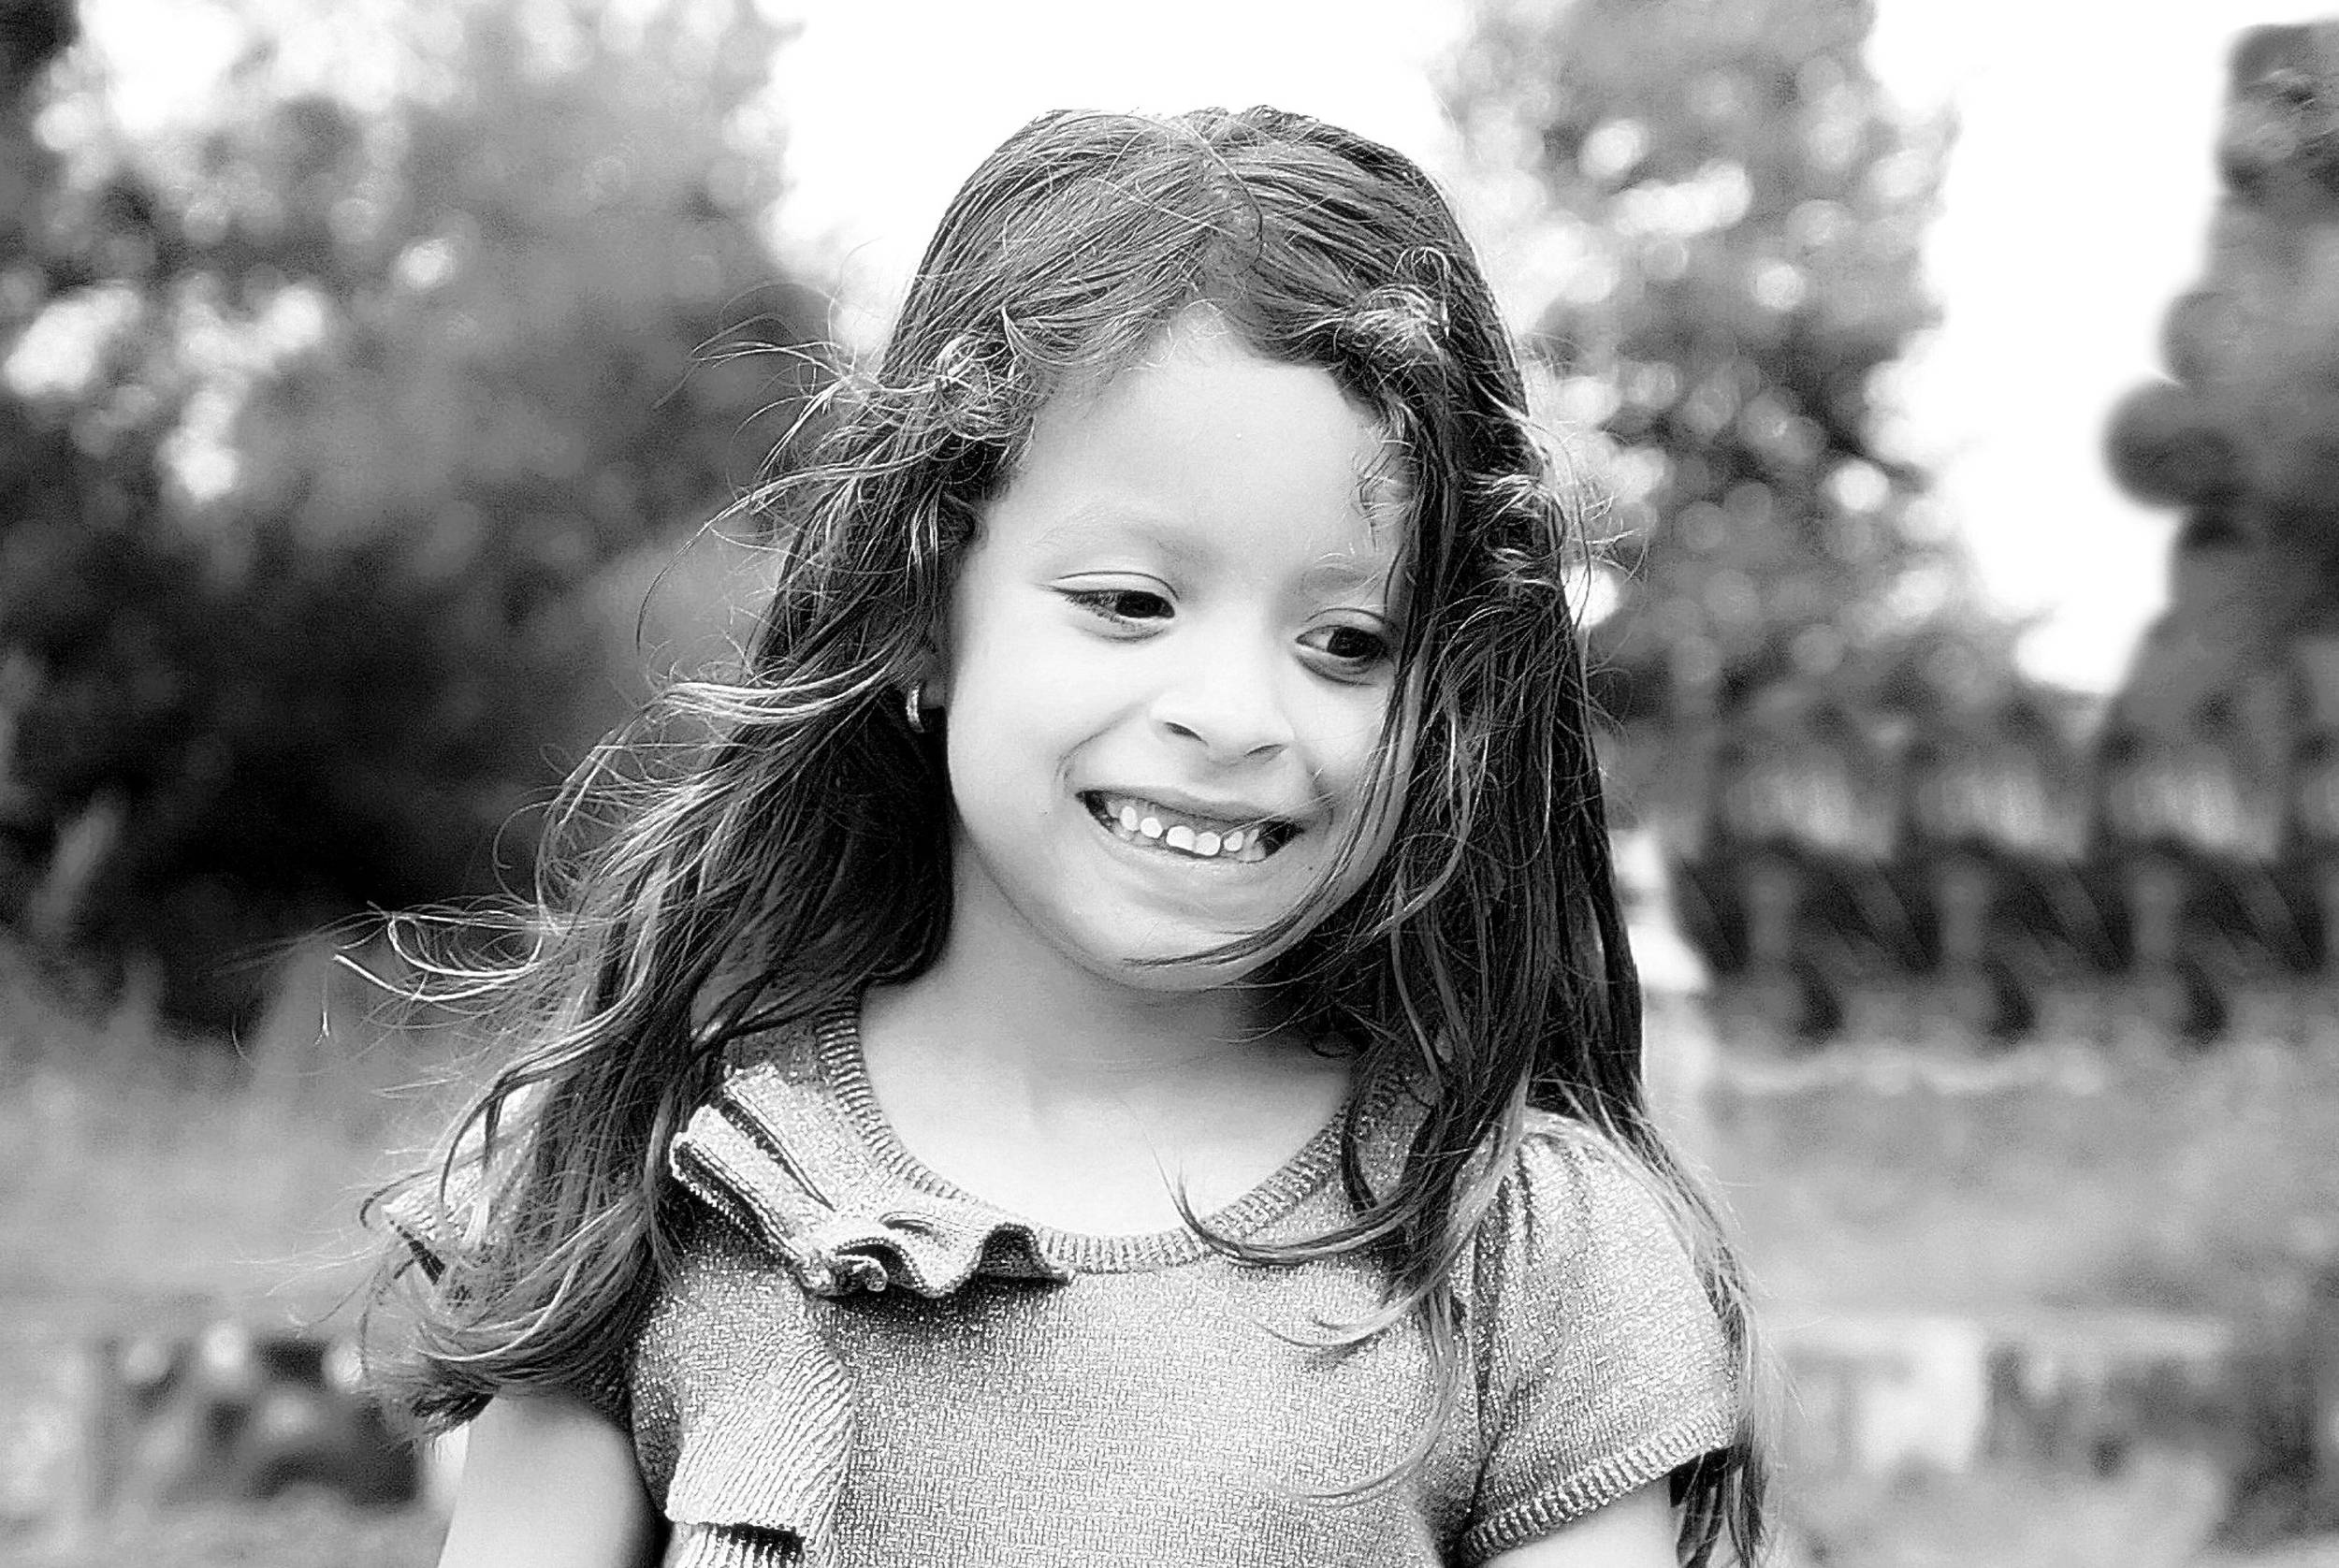 Happix-fotograaf-Nathalie-Joan-Veenendaal-Kinderfotografie-009_T0Y_LPxxK.jpg